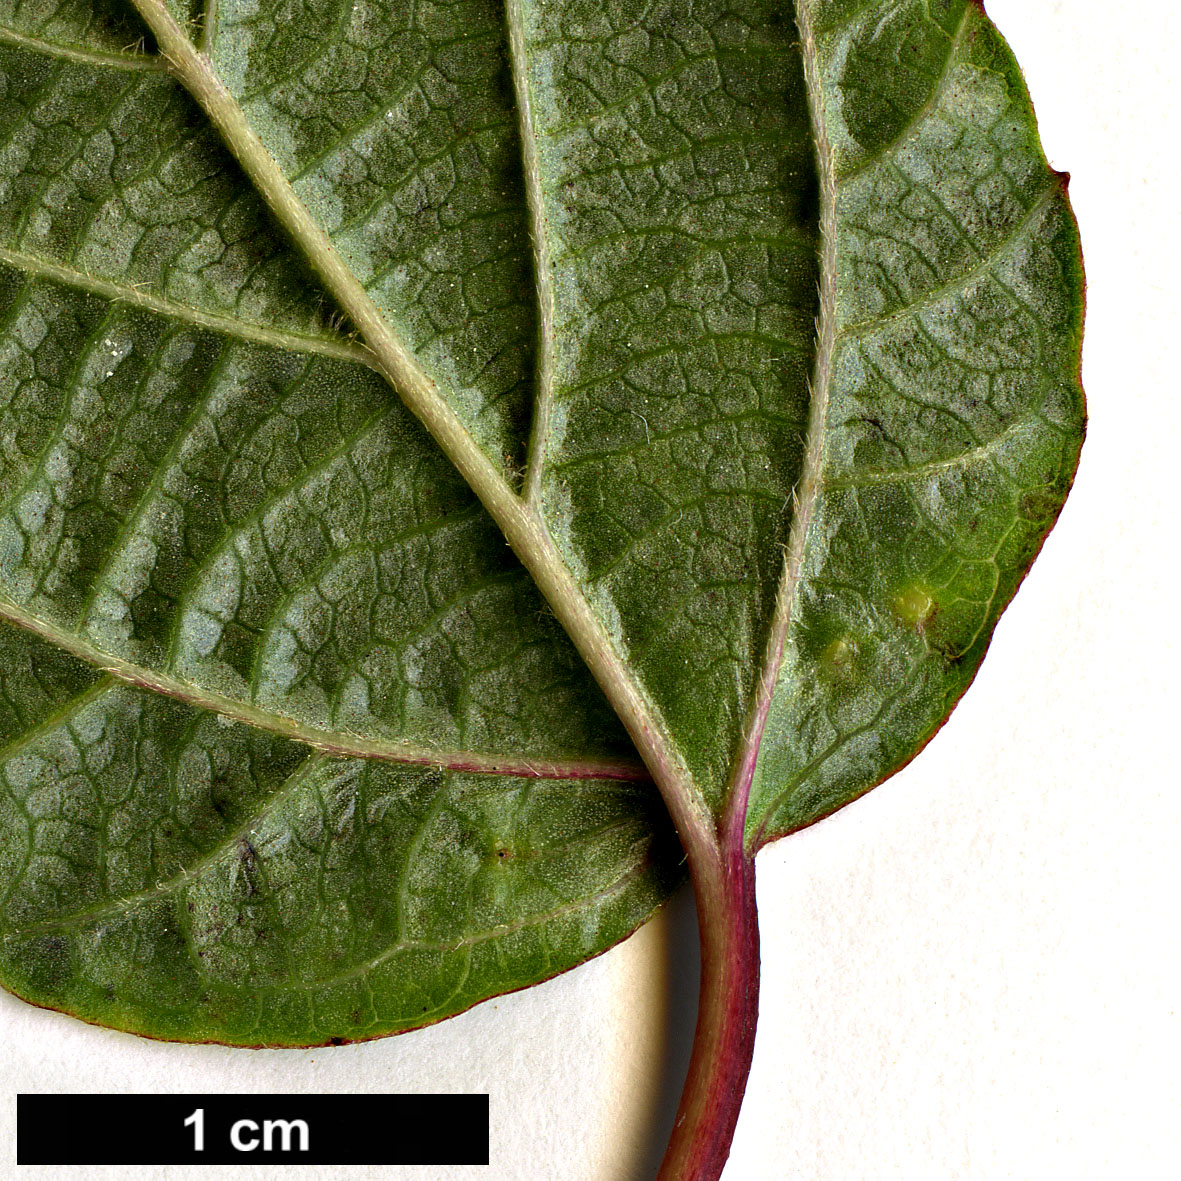 High resolution image: Family: Adoxaceae - Genus: Viburnum - Taxon: lobophyllum